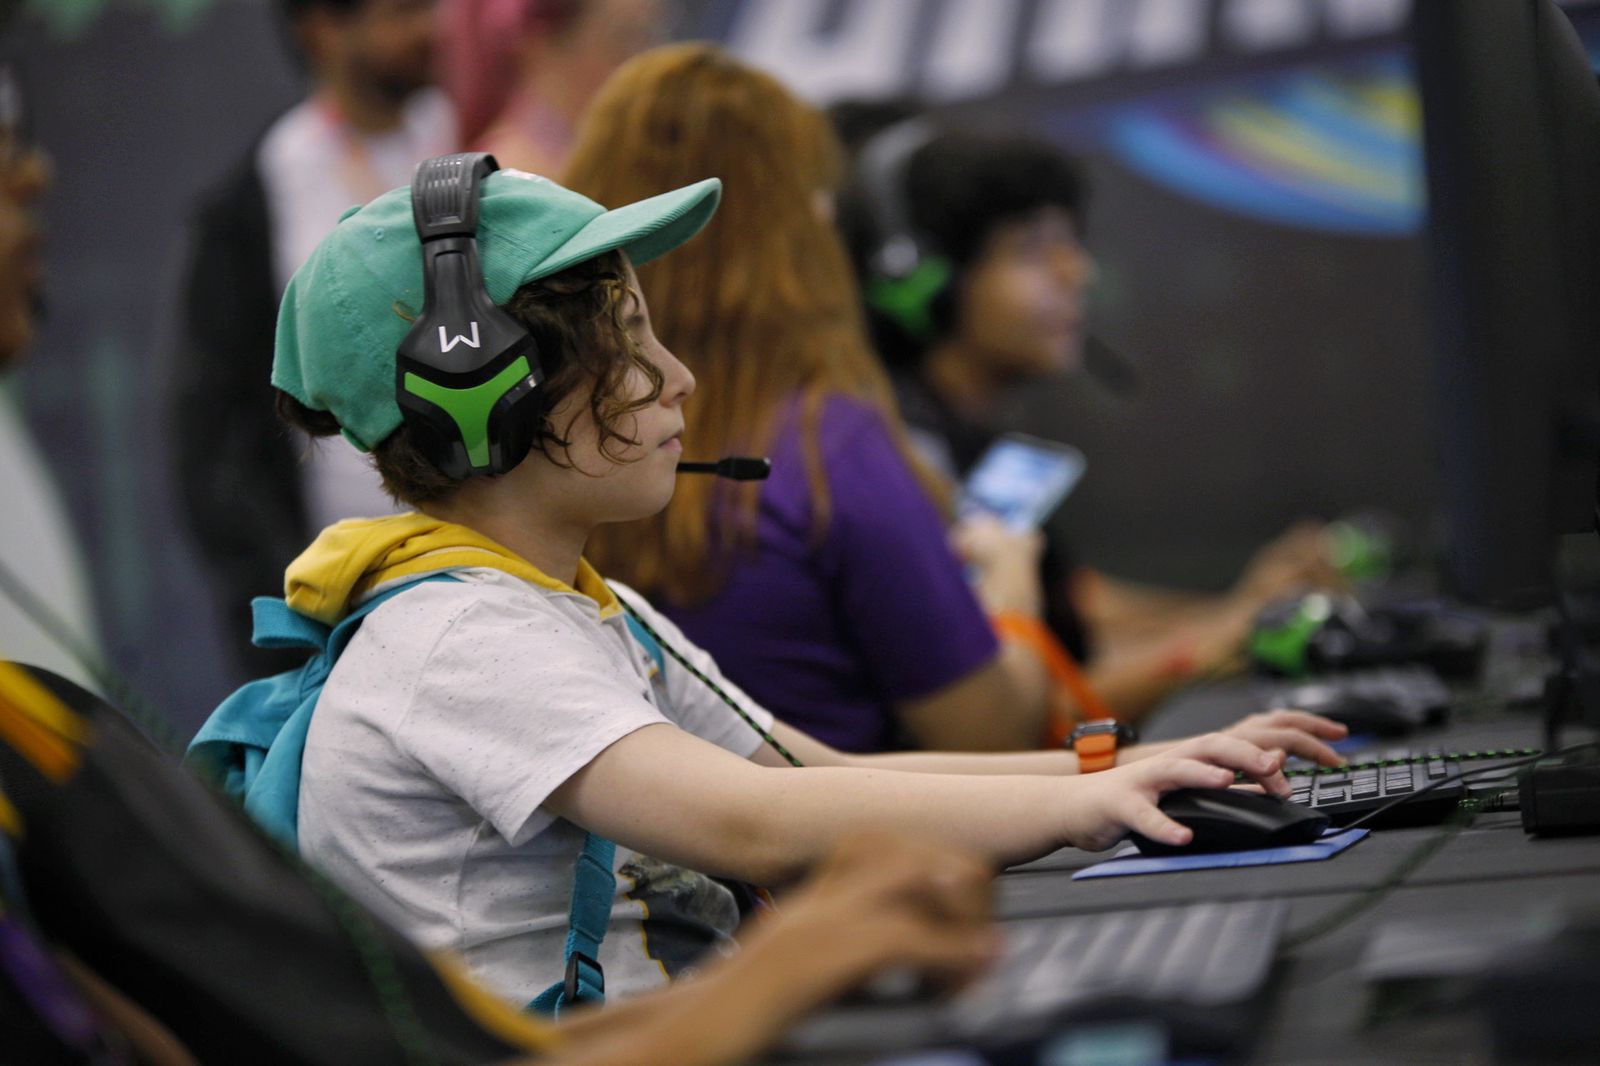 Stream Sebrae RS, Game inédito leva educação empreendedora para crianças  de 6 a 10 anos by Padrinho Agência Conteúdo